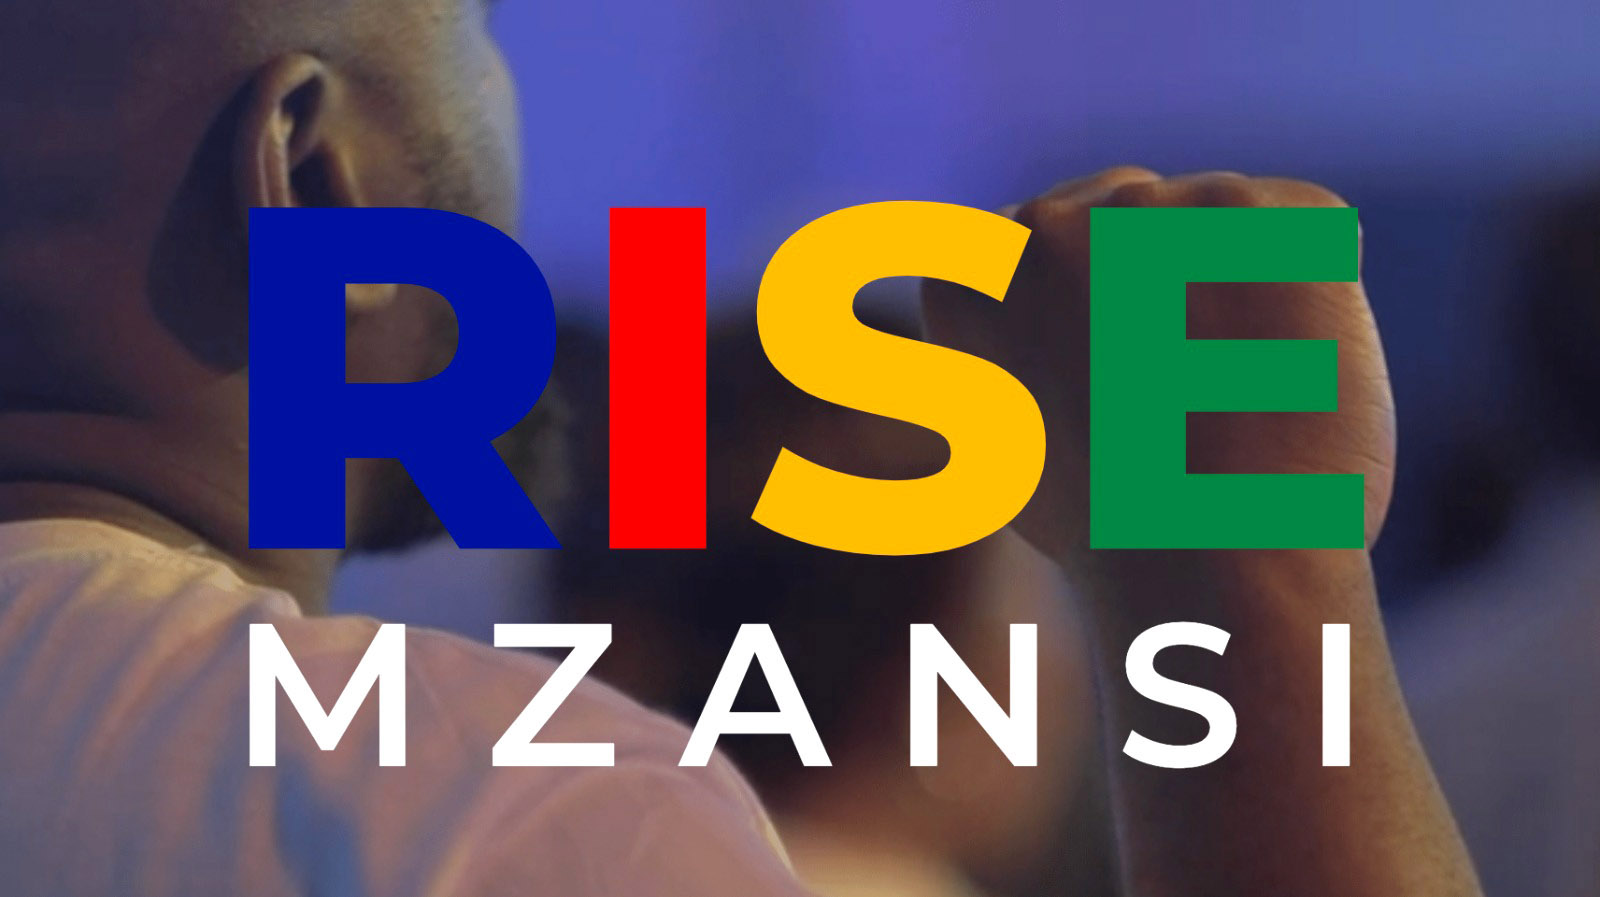 Rize Mzansi launch